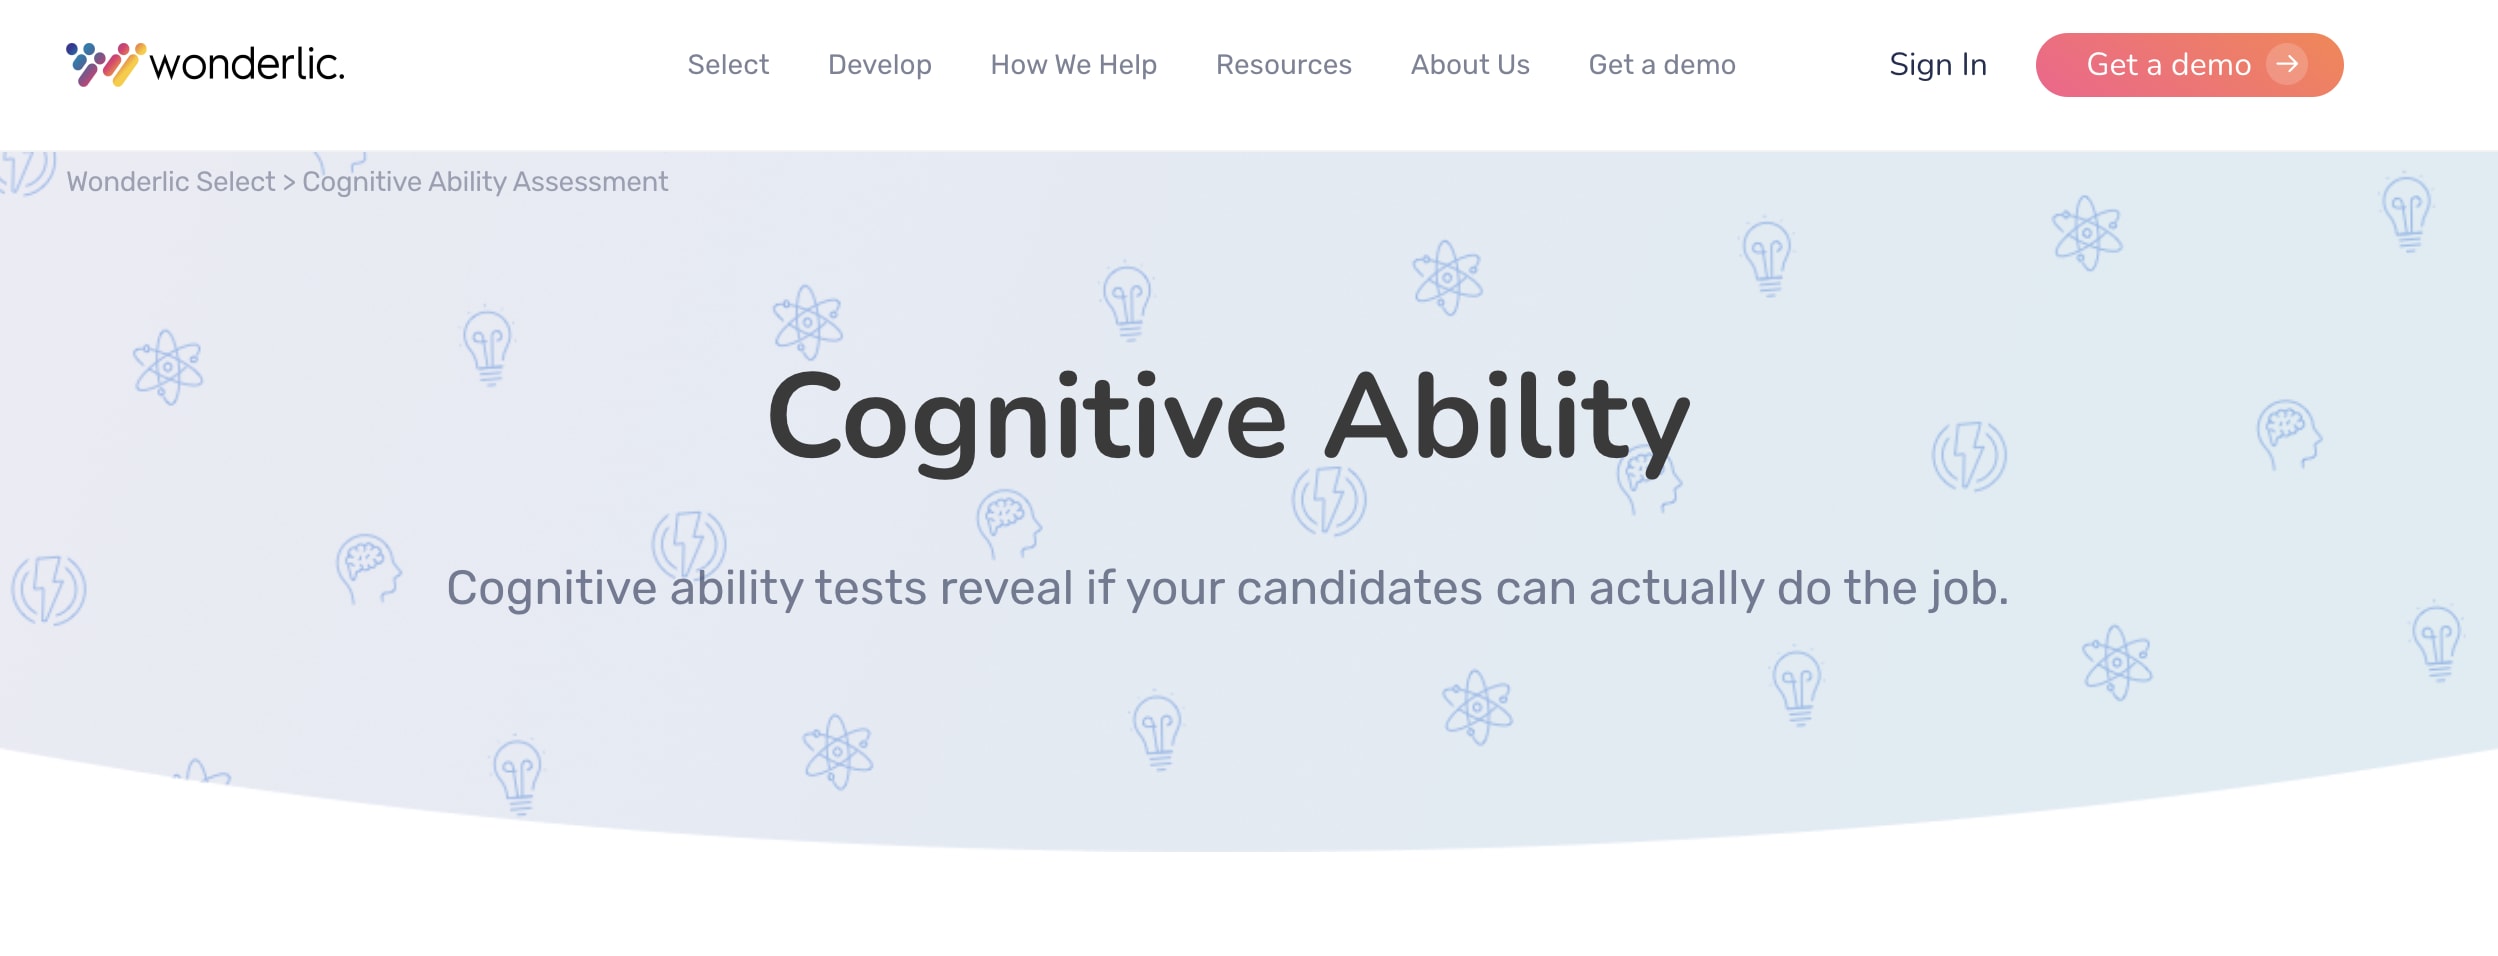 Wonderlic cognitive ability test